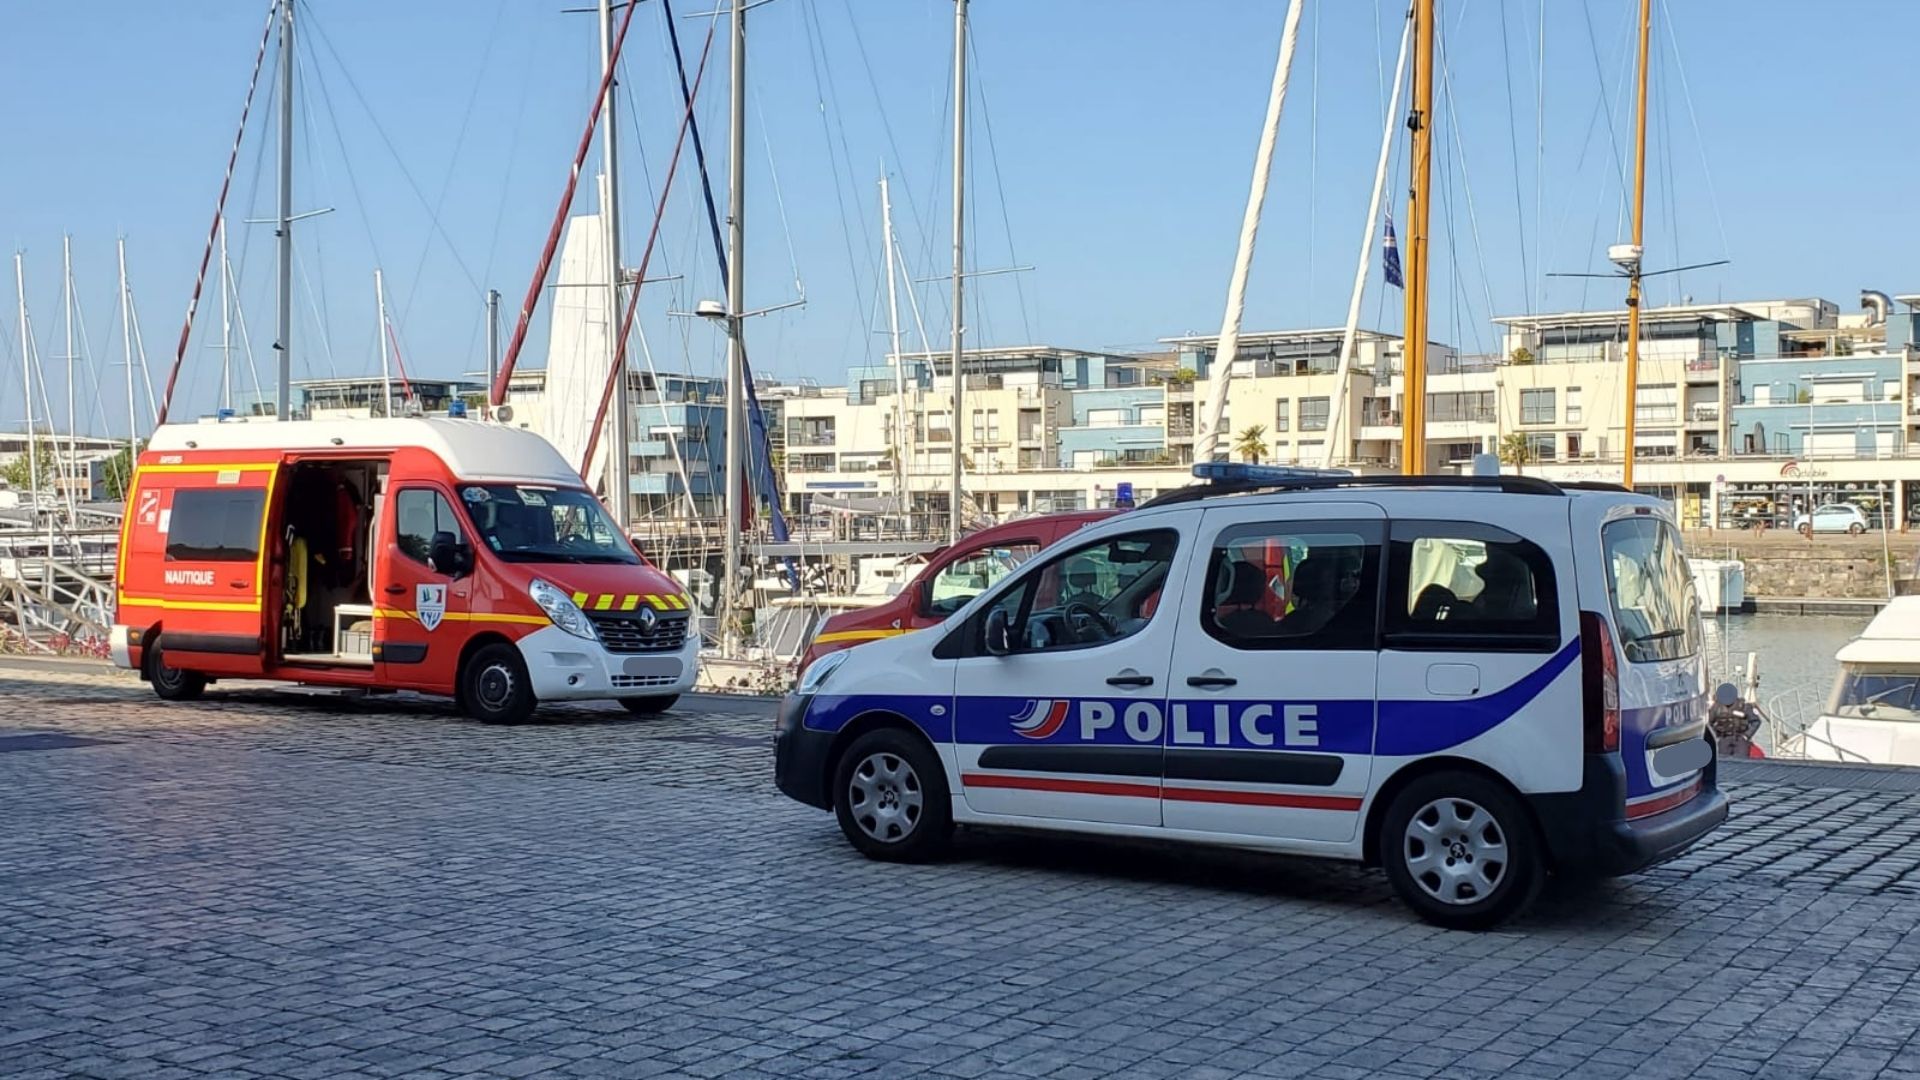 La Rochelle : un homme meurt noyé !